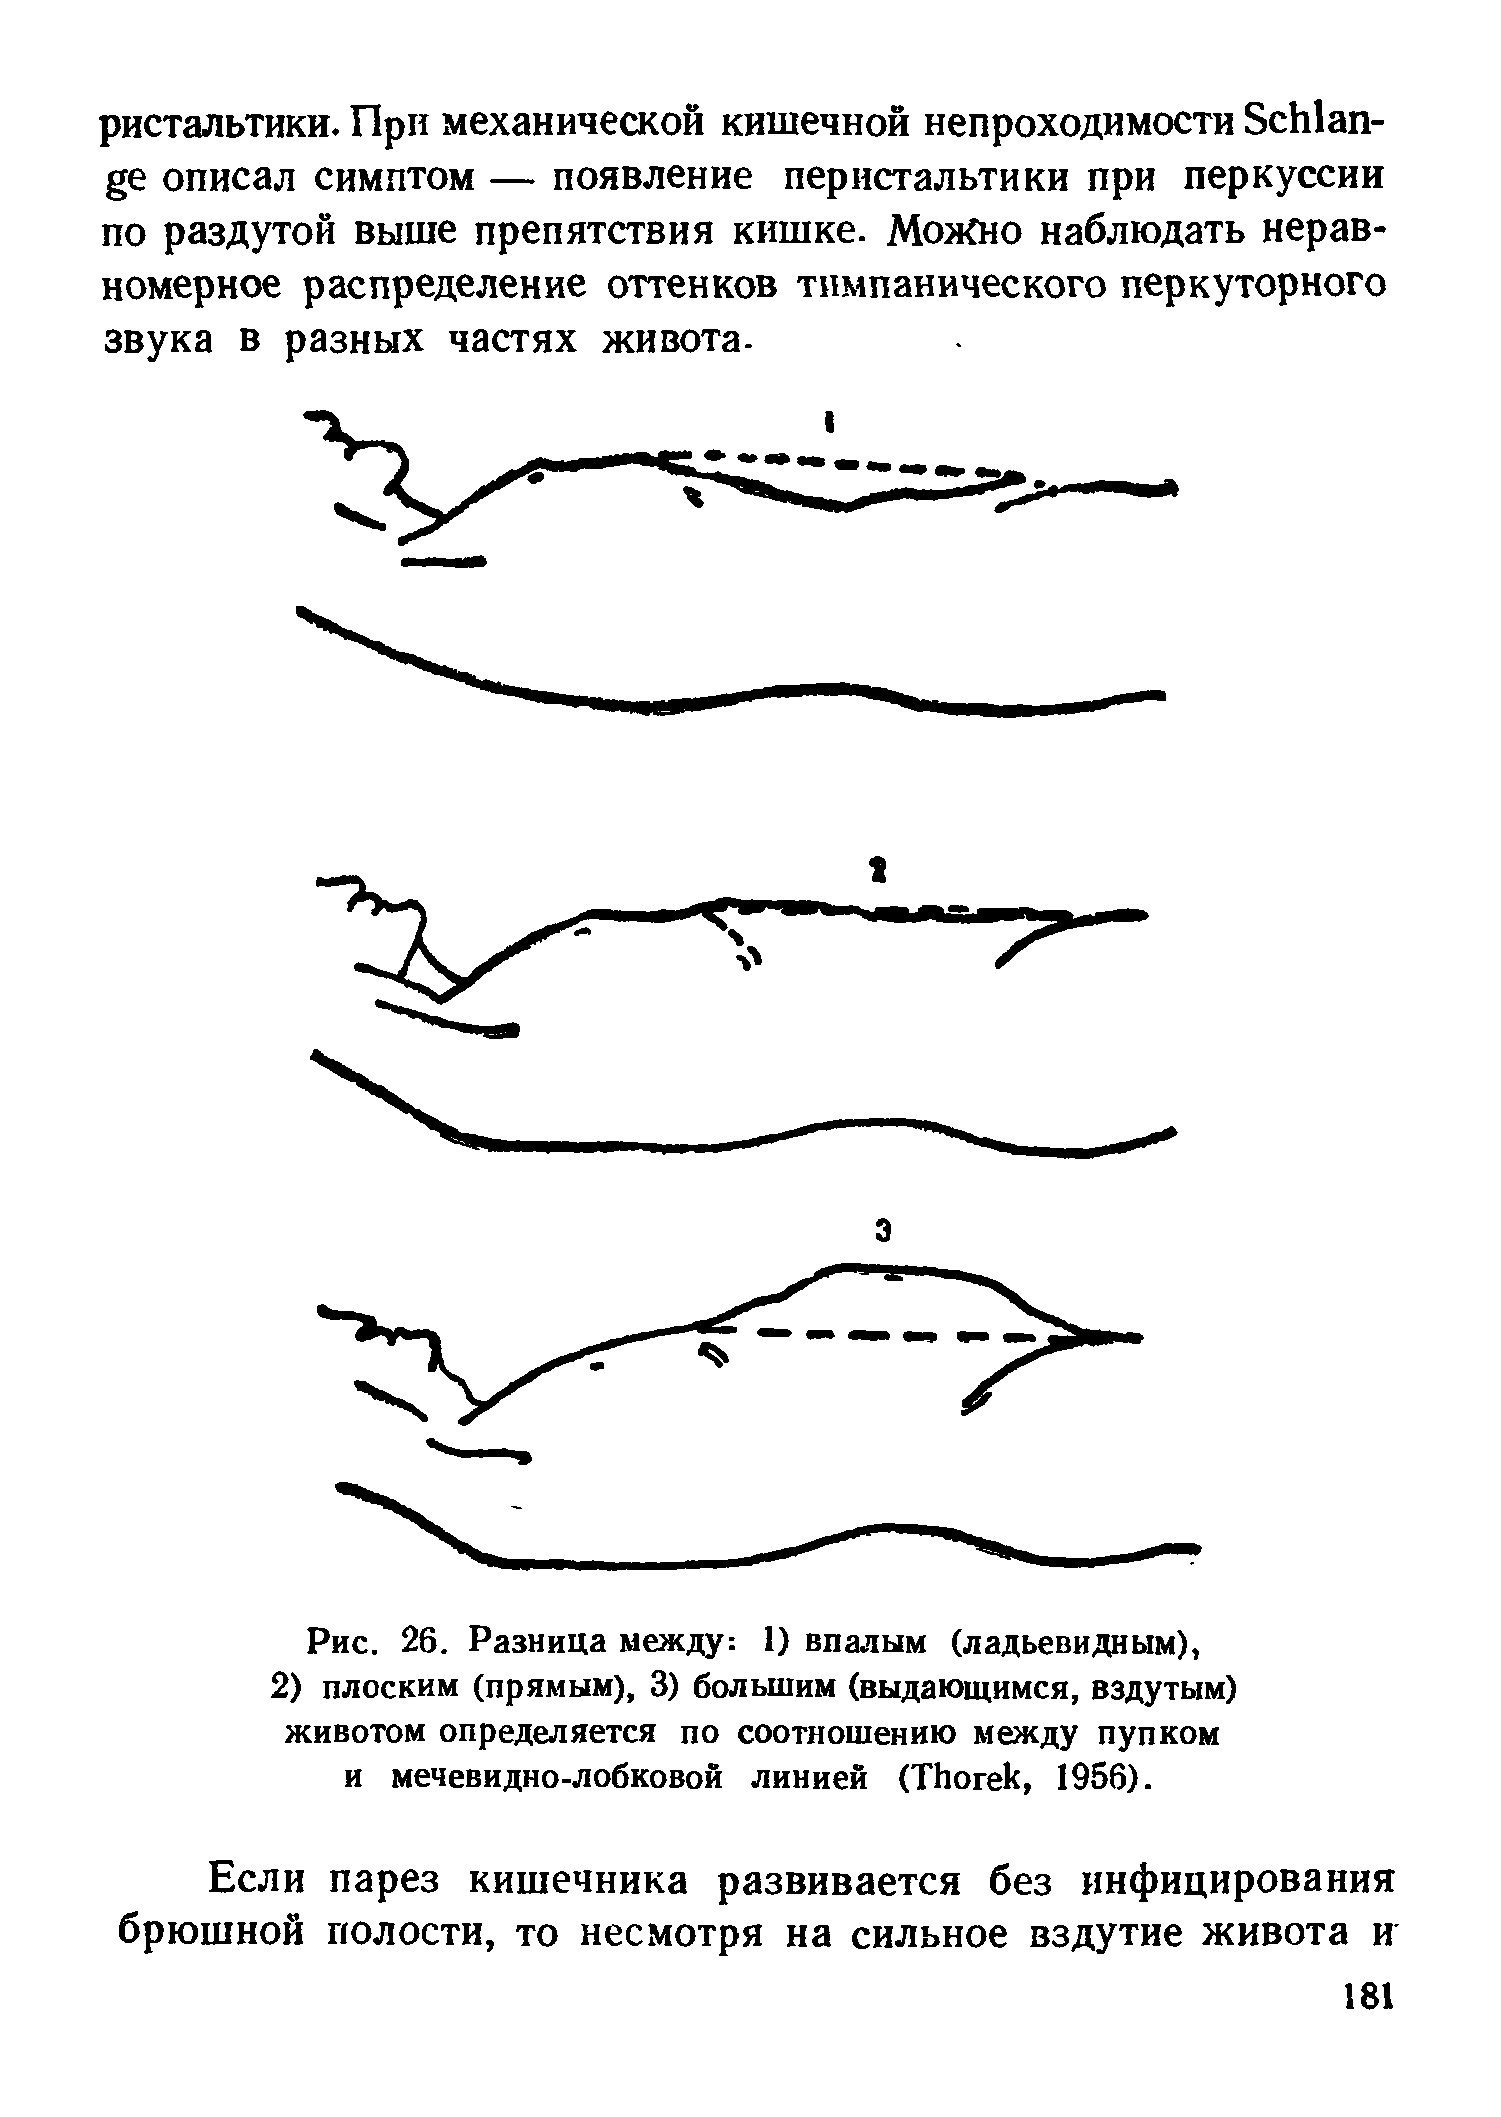 Рис. 26. Разница между 1) впалым (ладьевидным), 2) плоским (прямым), 3) большим (выдающимся, вздутым) животом определяется по соотношению между пупком и мечевидно-лобковой линией (ТЬогек, 1956).